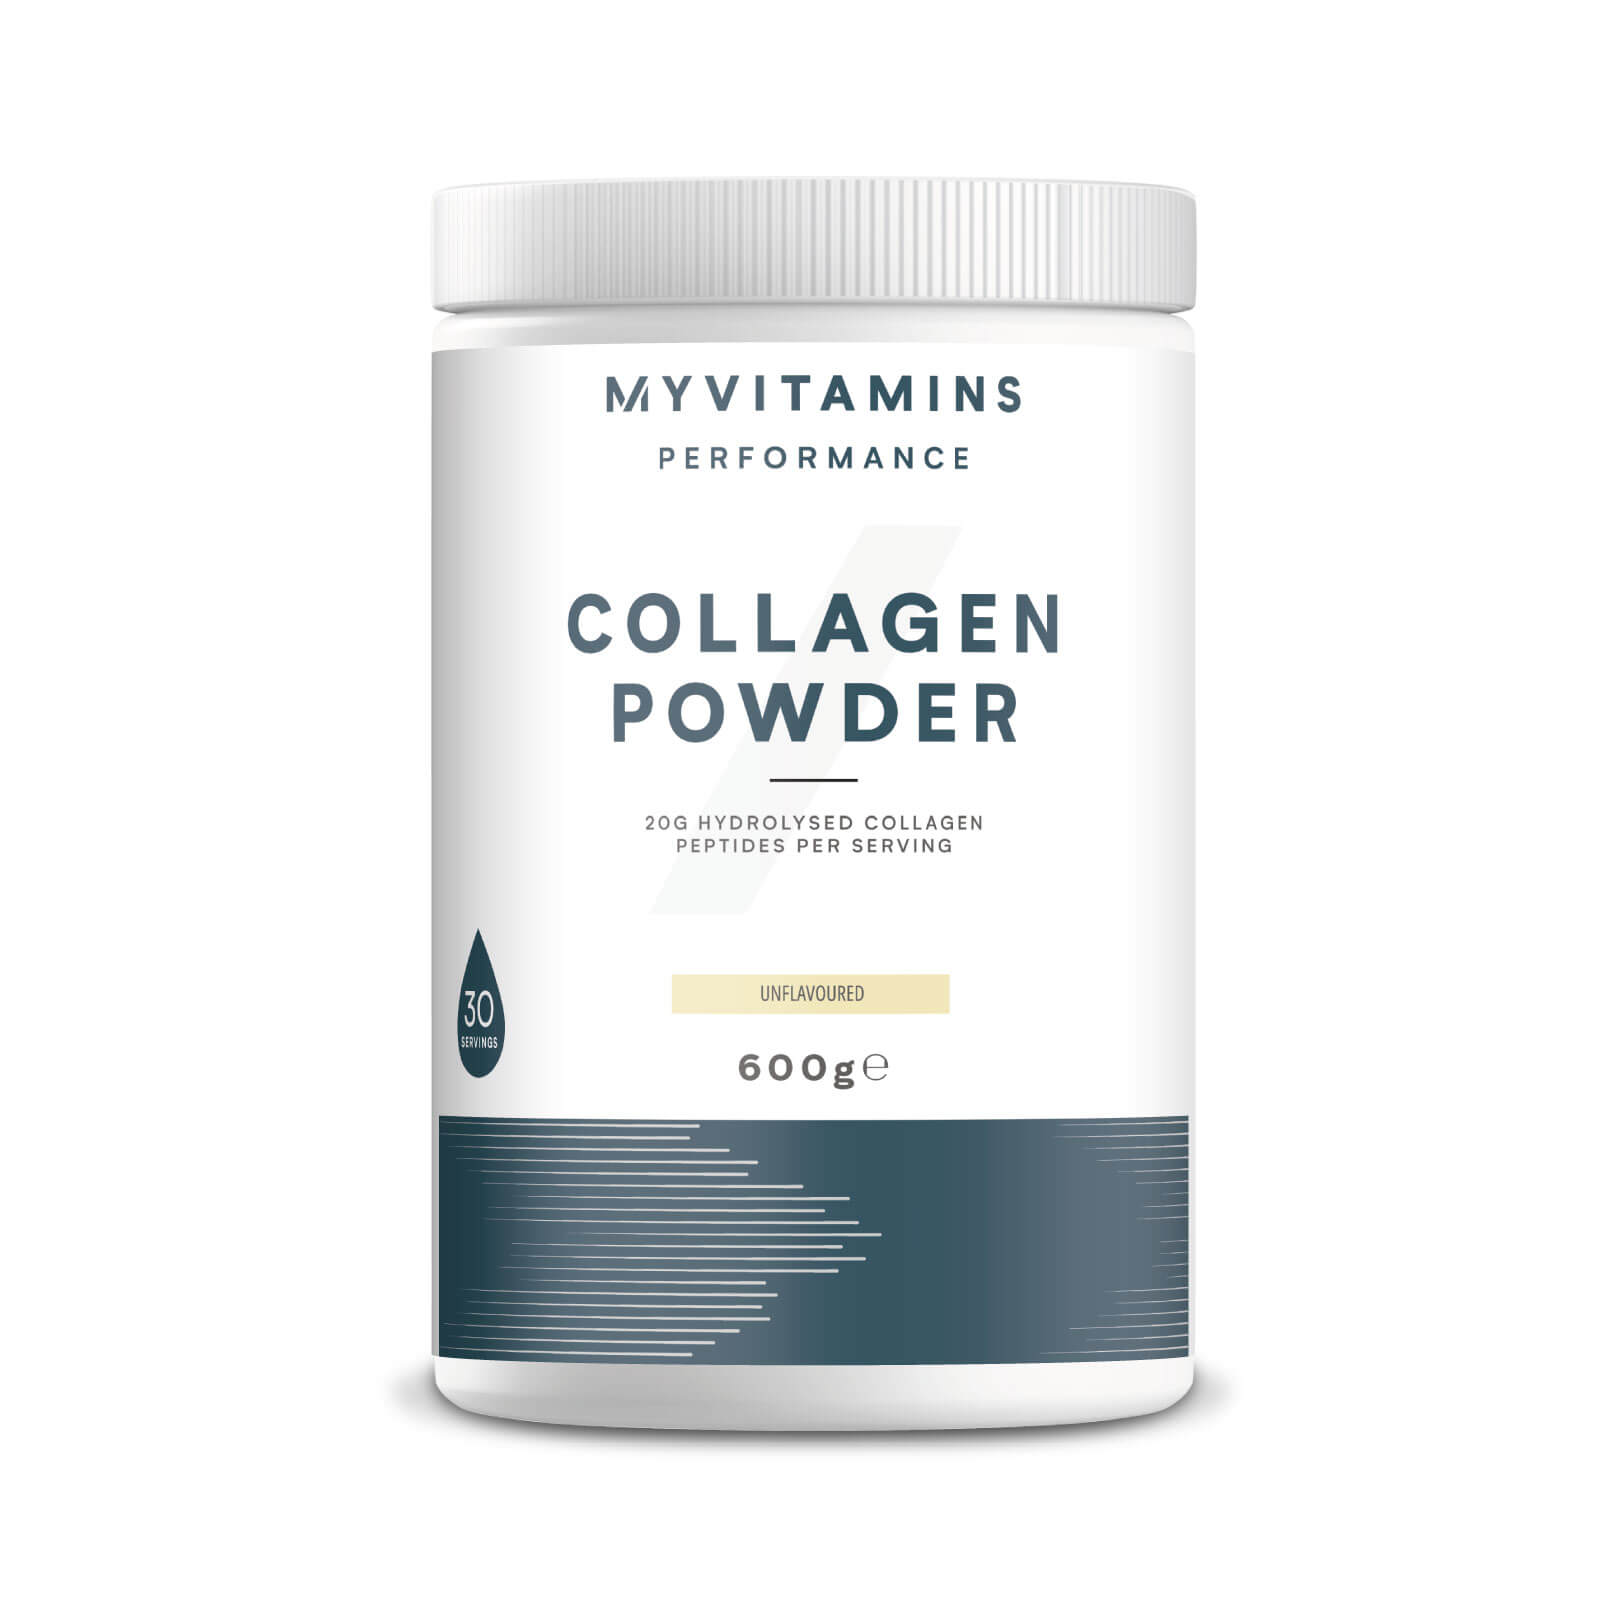 Collagen Powder - Unflavoured